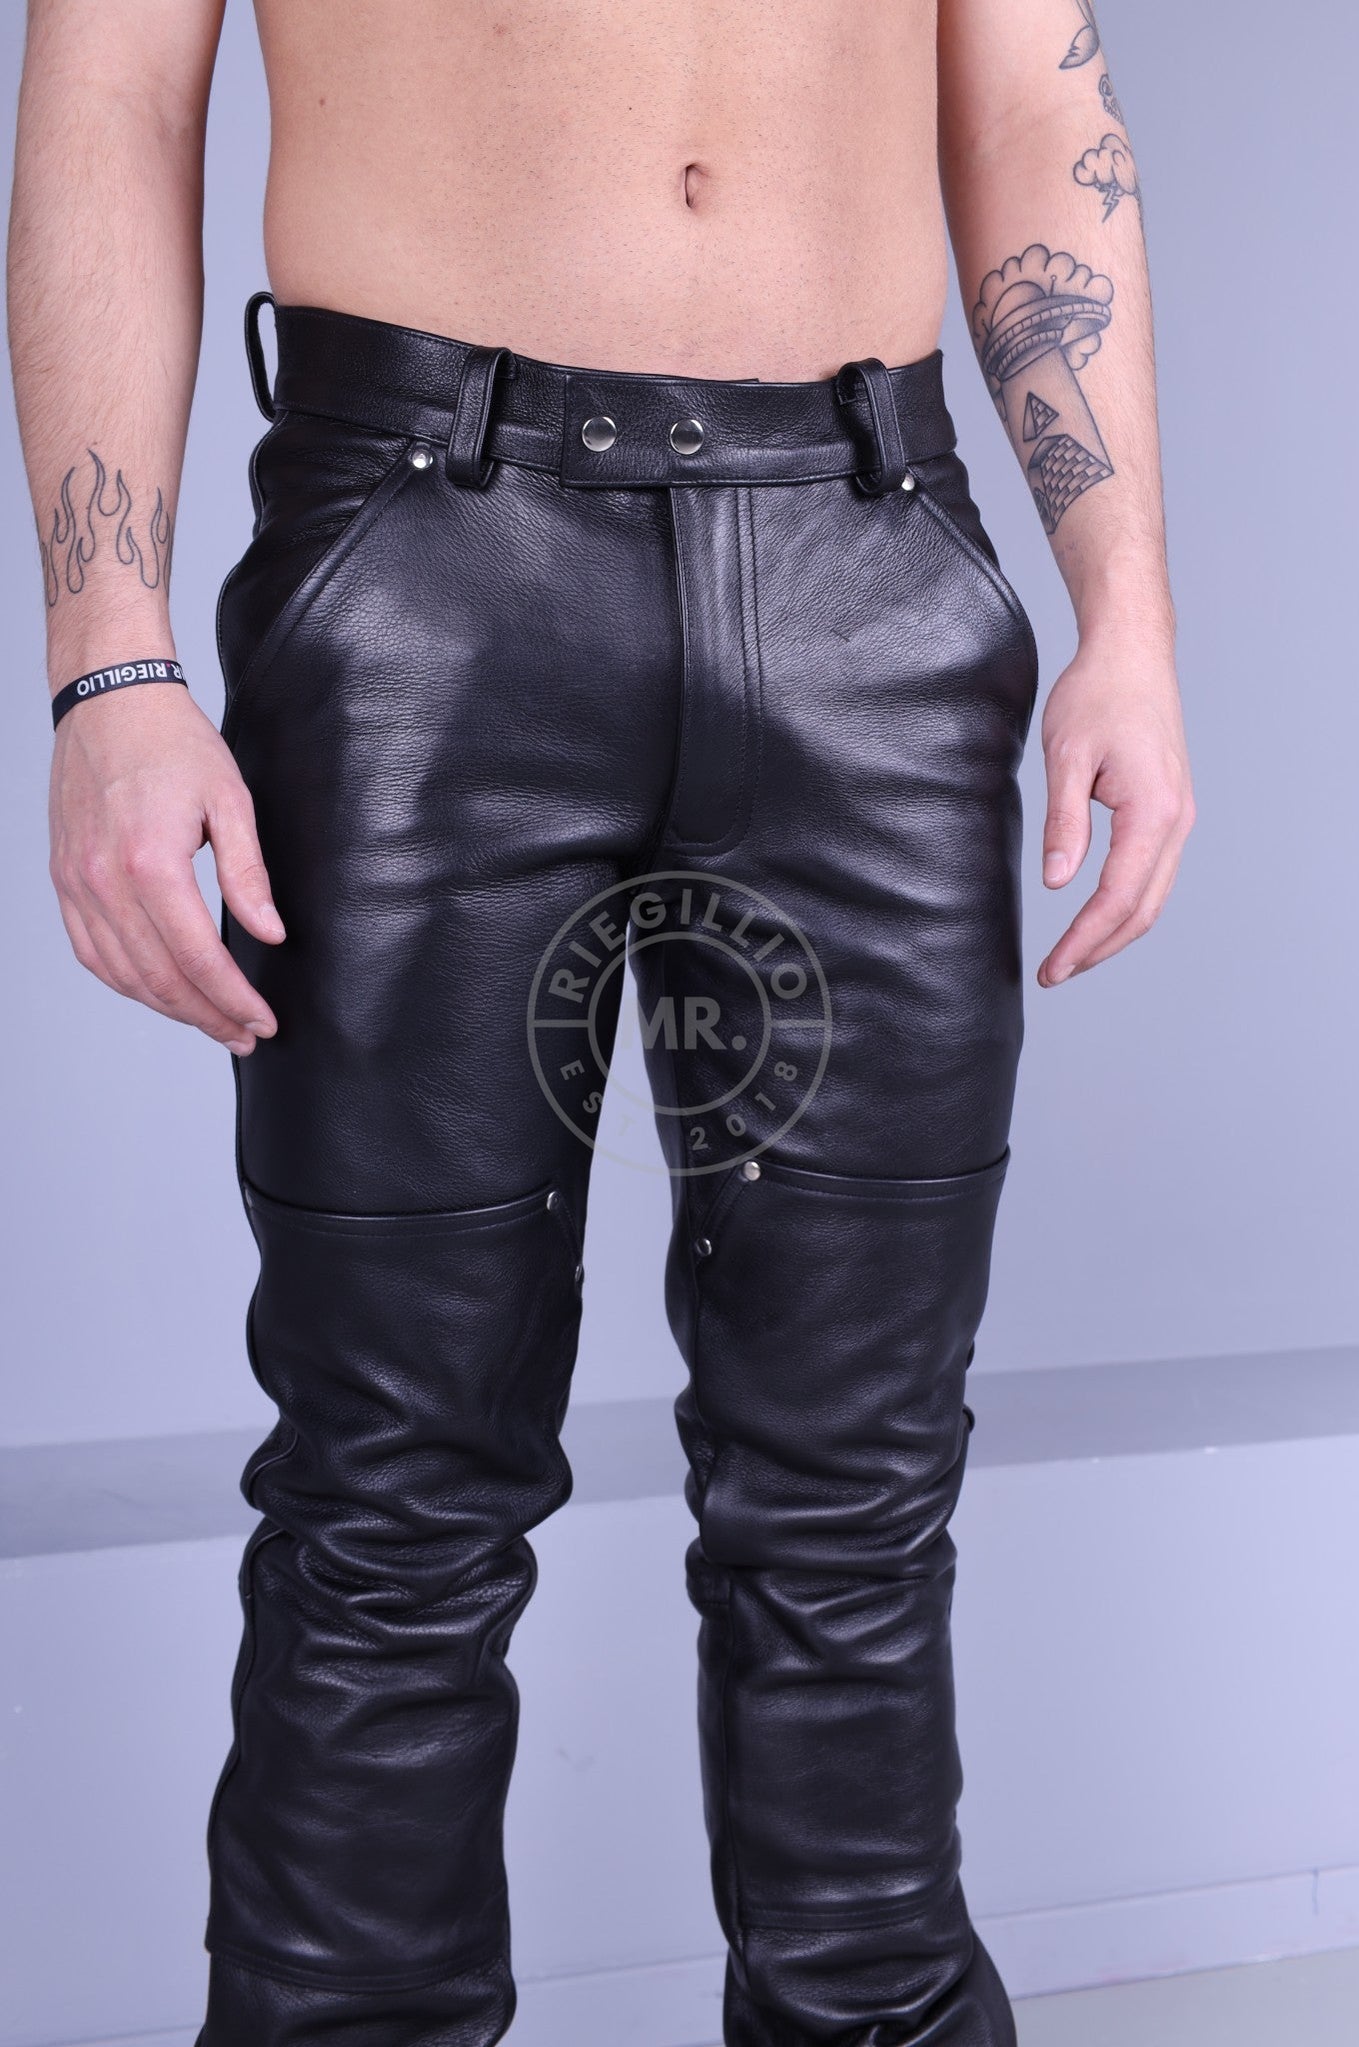 Black Leather Carpenter Pants-at MR. Riegillio